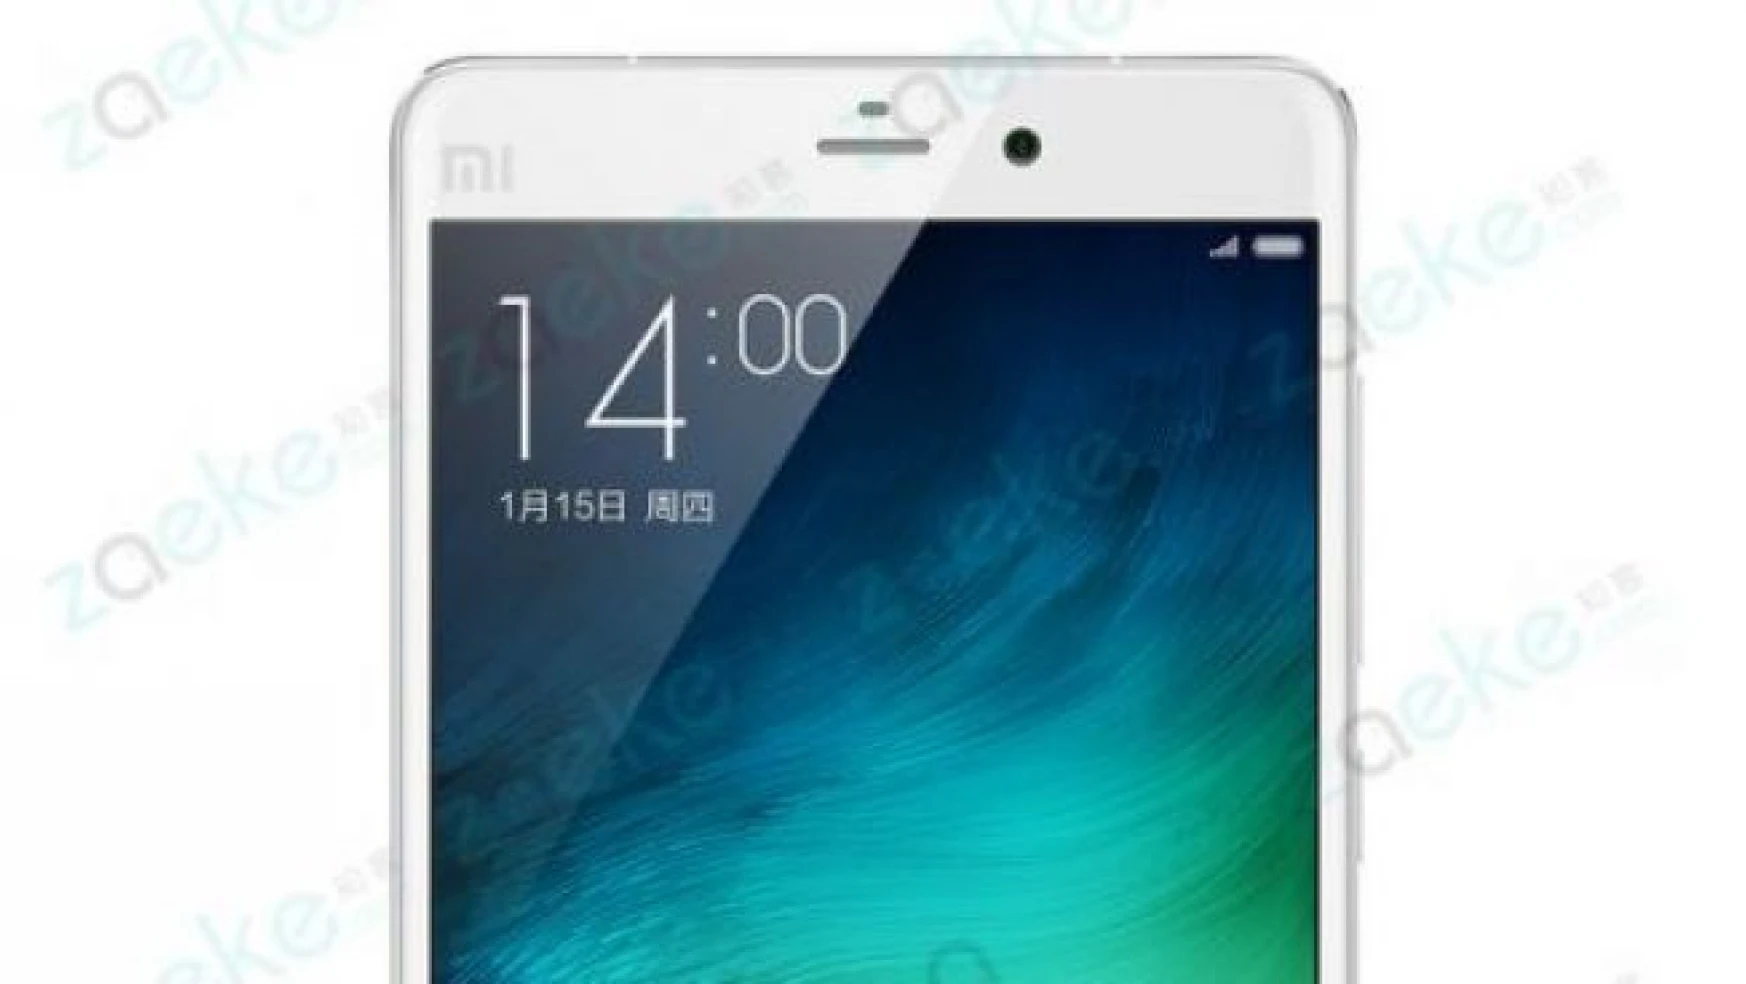 Xiaomi Mi 5: Yeni muhtemel fiyat ve teknik özellikleri